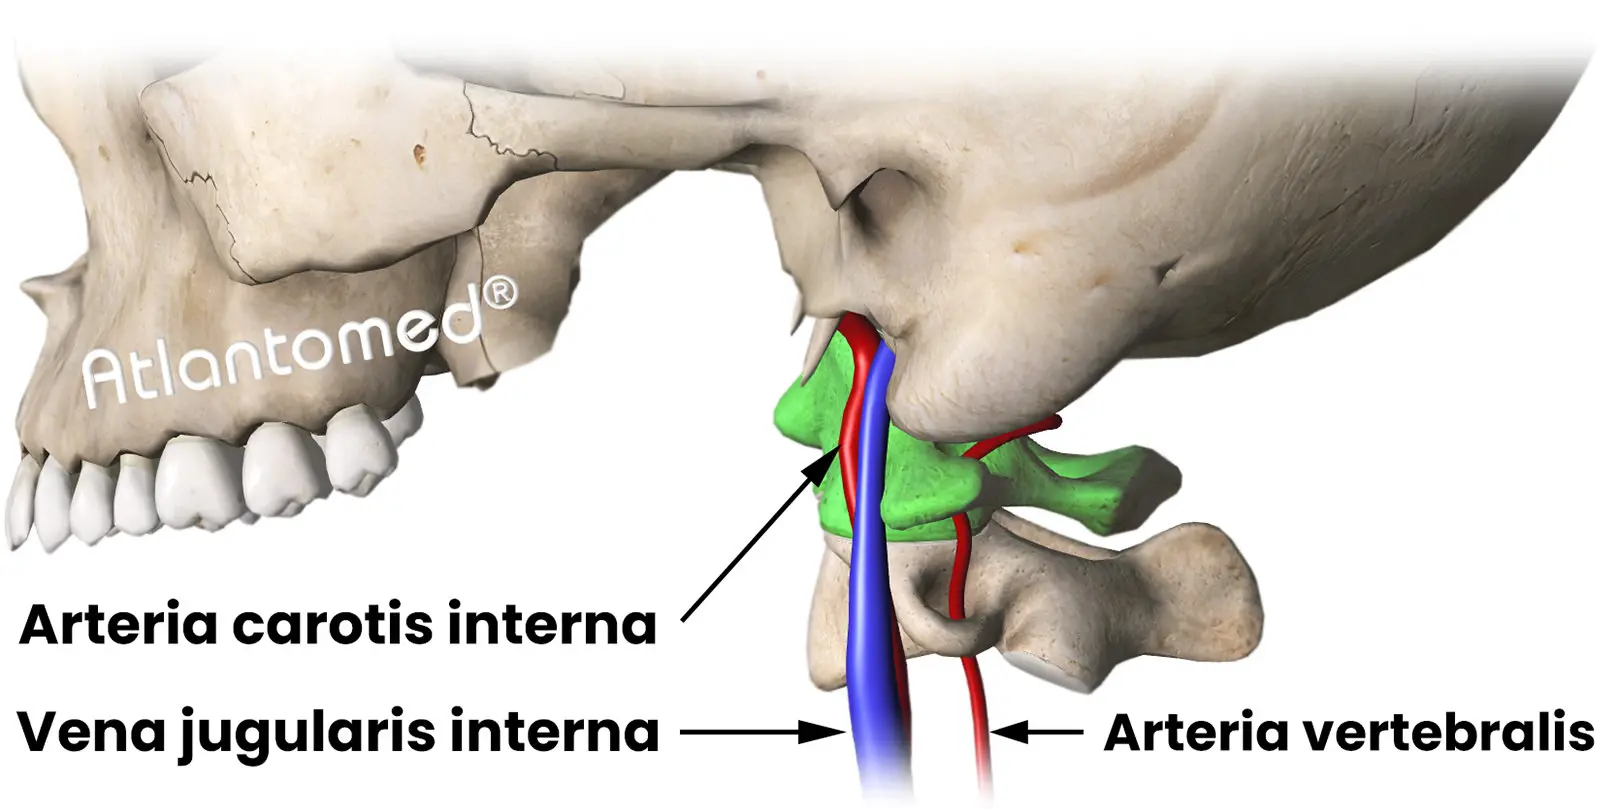 Arteria carotis interna, Vena jugularis interna und Arteria vertebralis in anatomischem Bezug zum Atlas und Schädel